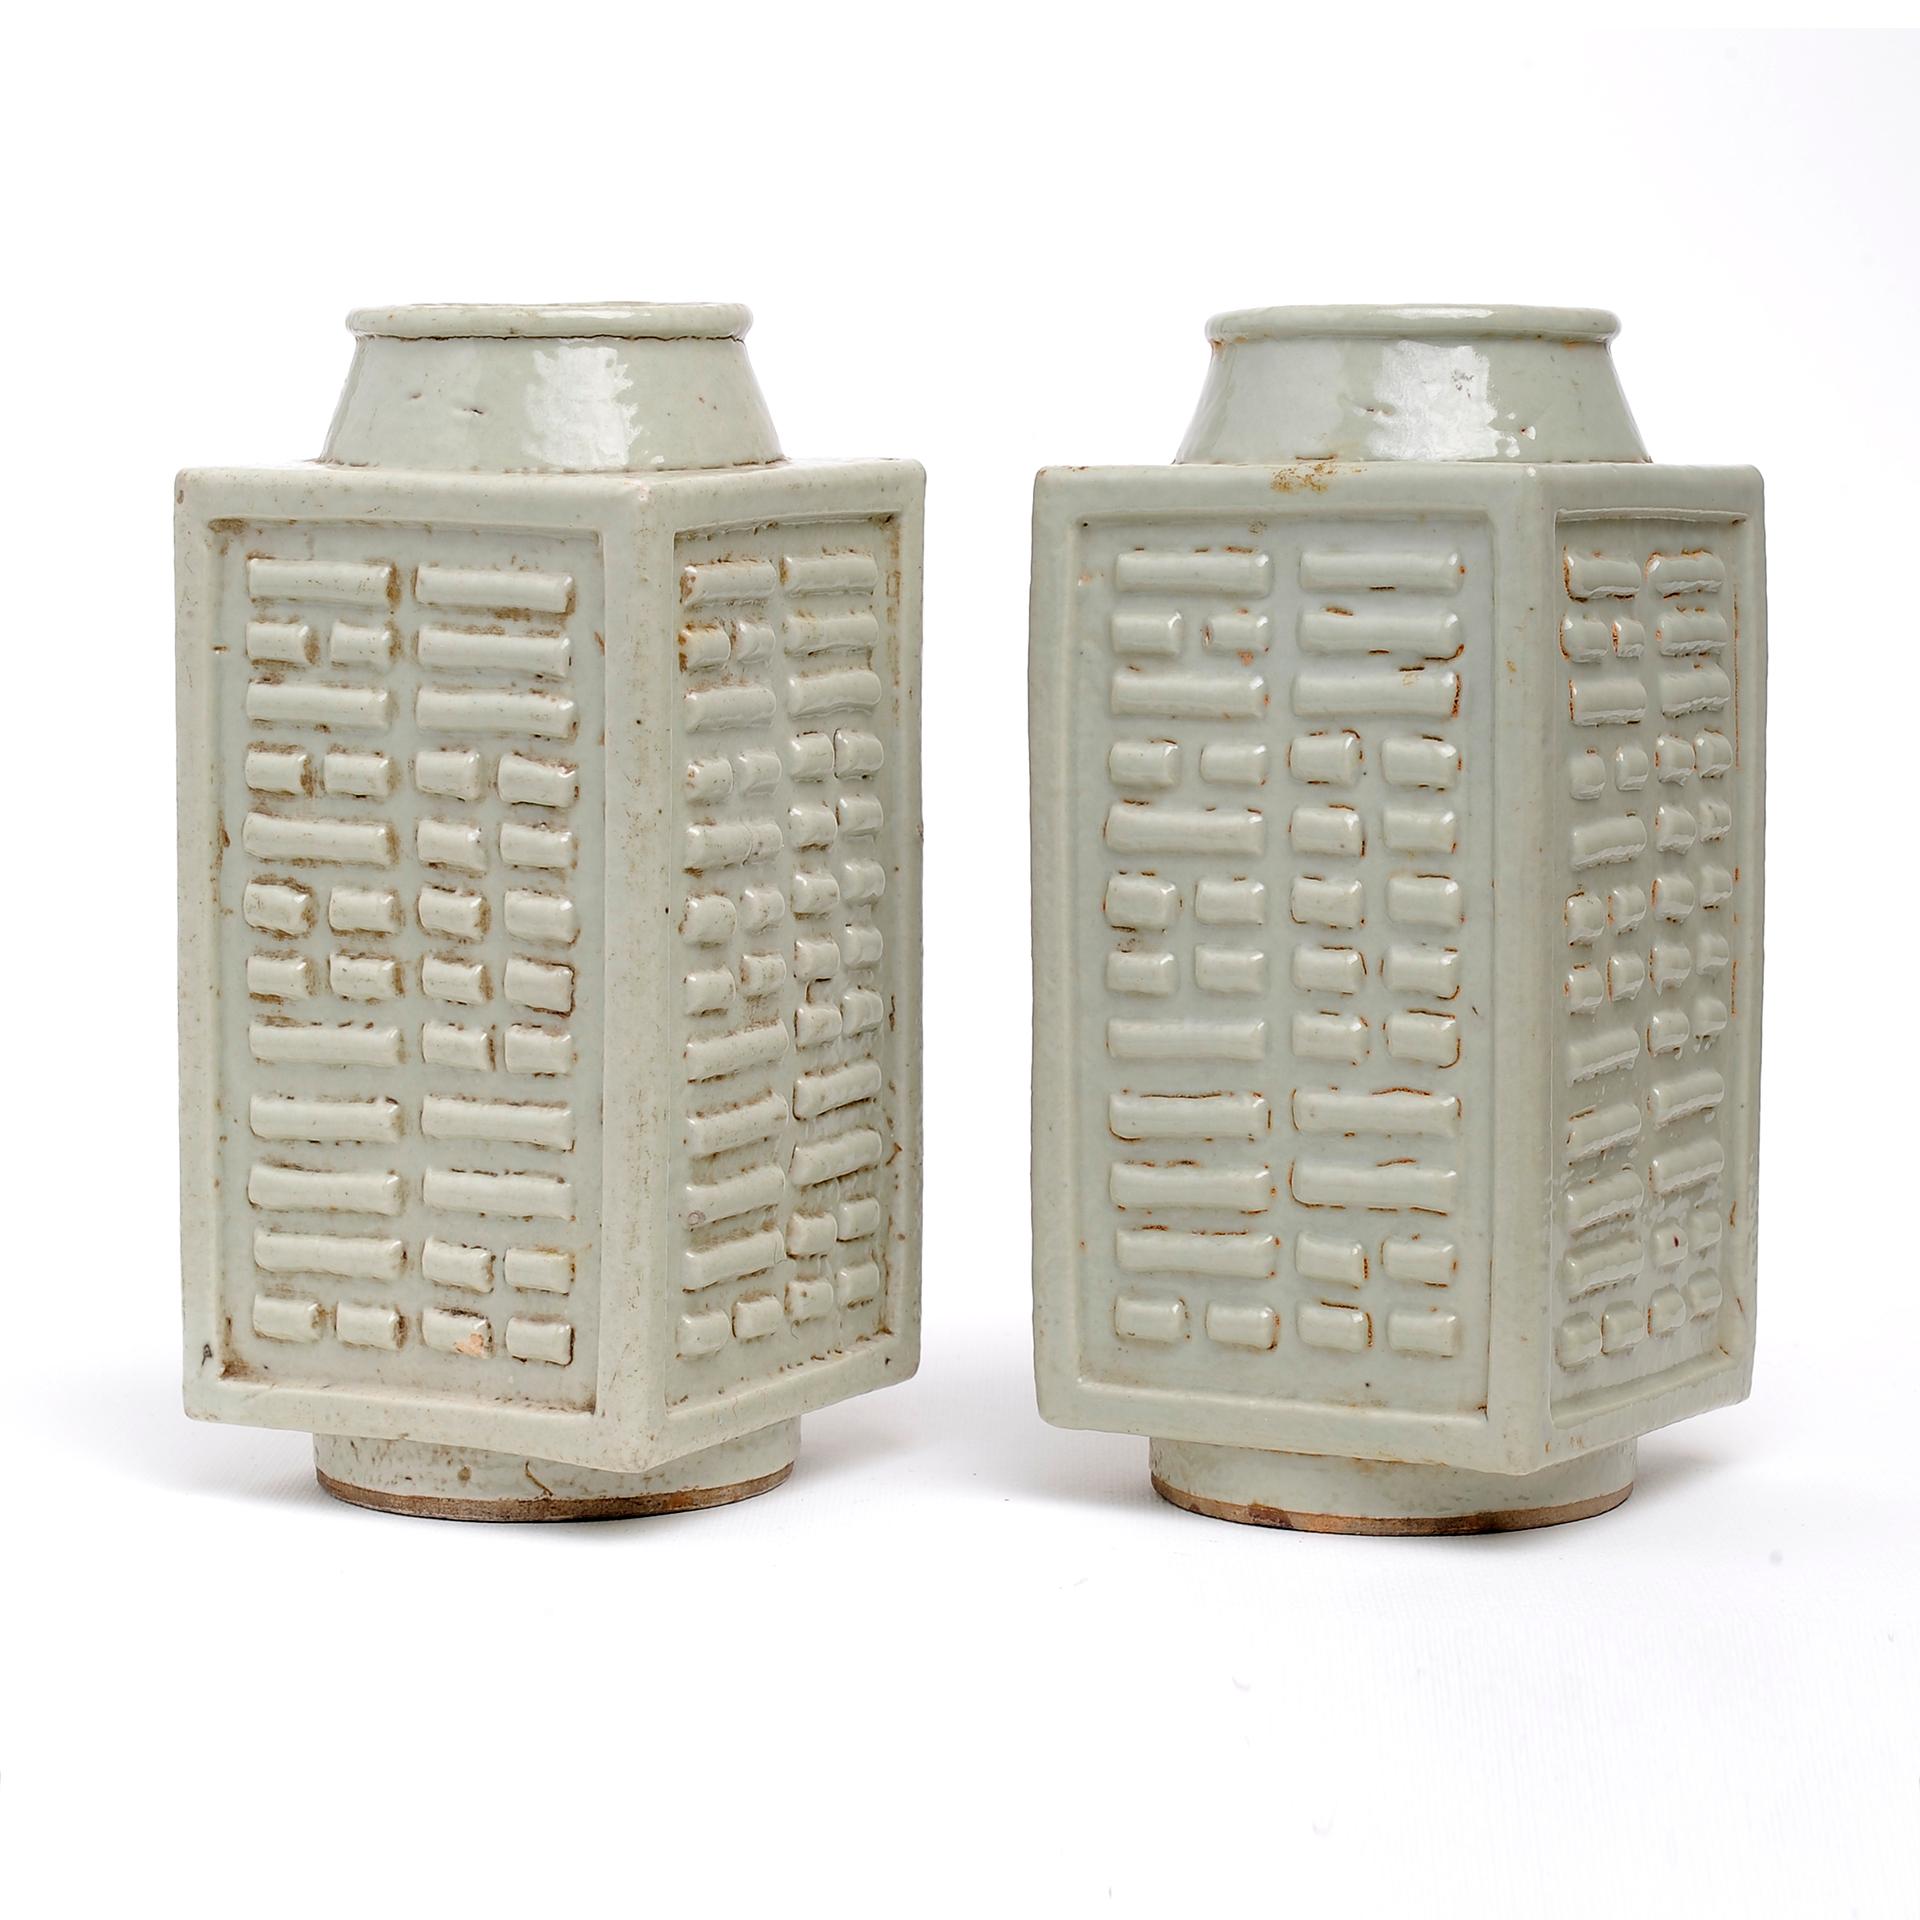 Rare paire d'anciens vases carrés en porcelaine céladon de Chine avec des signes Ching.
Elles ont fait partie de ma collection personnelle pendant 40 ans : regardez toutes les autres céramiques chinoises anciennes que j'ai publiées ces jours-ci.